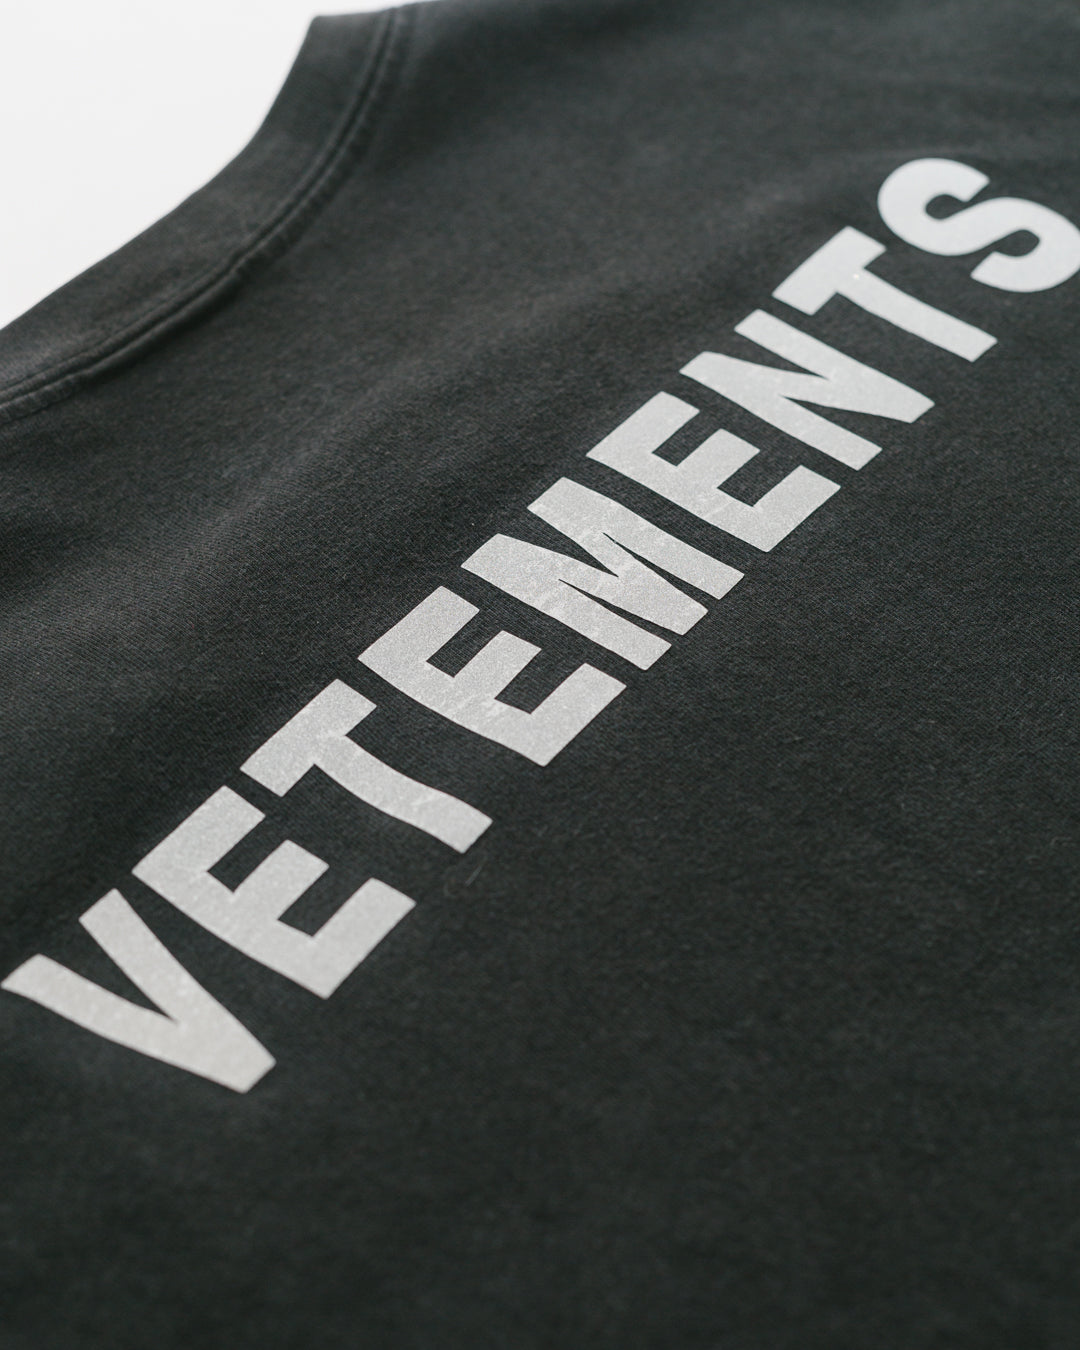 Vetements Staff Logo Tshirt